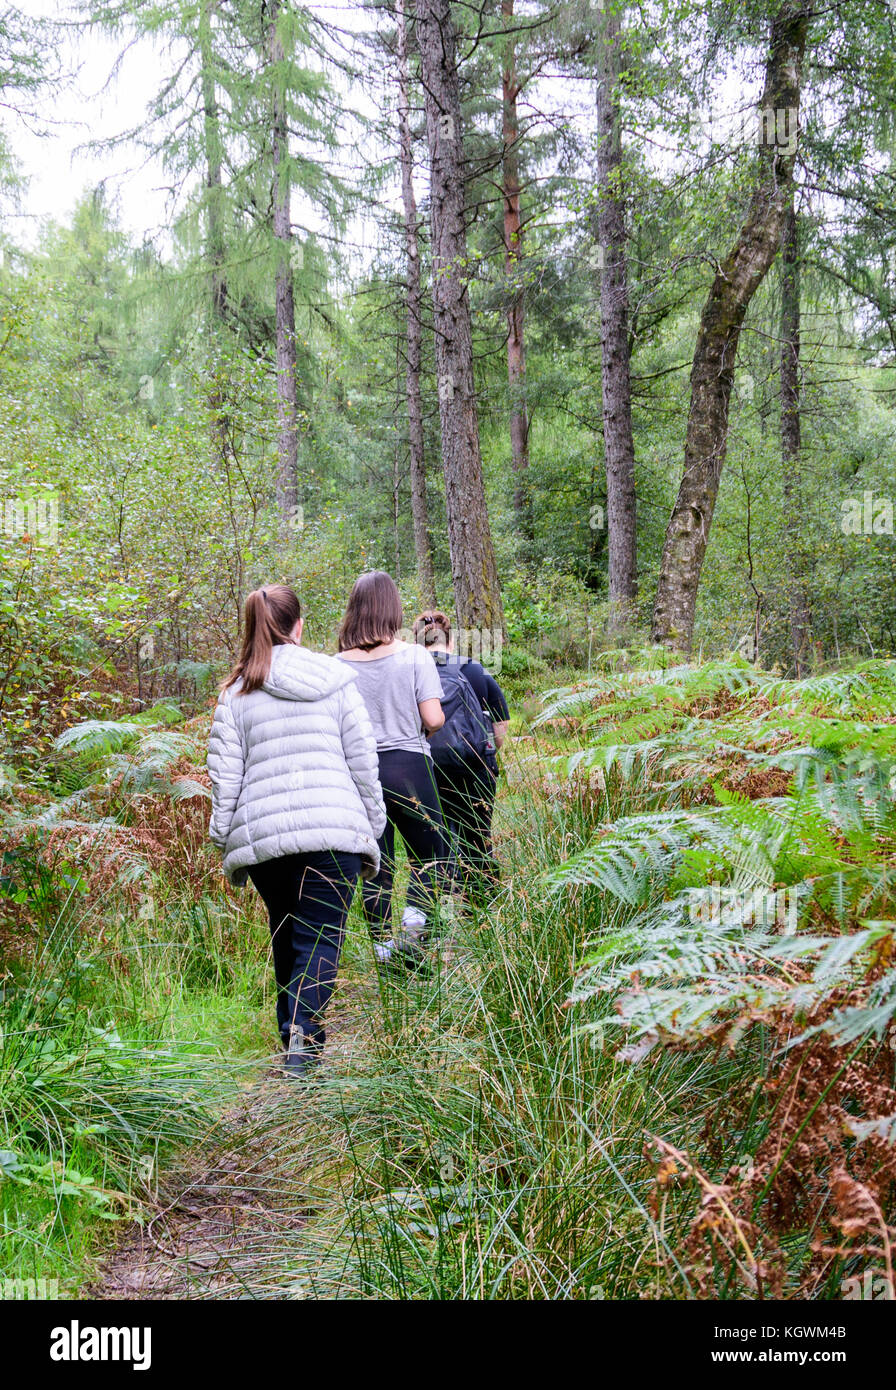 Una famiglia di quattro persone (madre e tre bambini) escursionismo in un bosco vicino a Loch Lomond in Loch Lomond e il Trossachs Naitional Park, Scozia Foto Stock